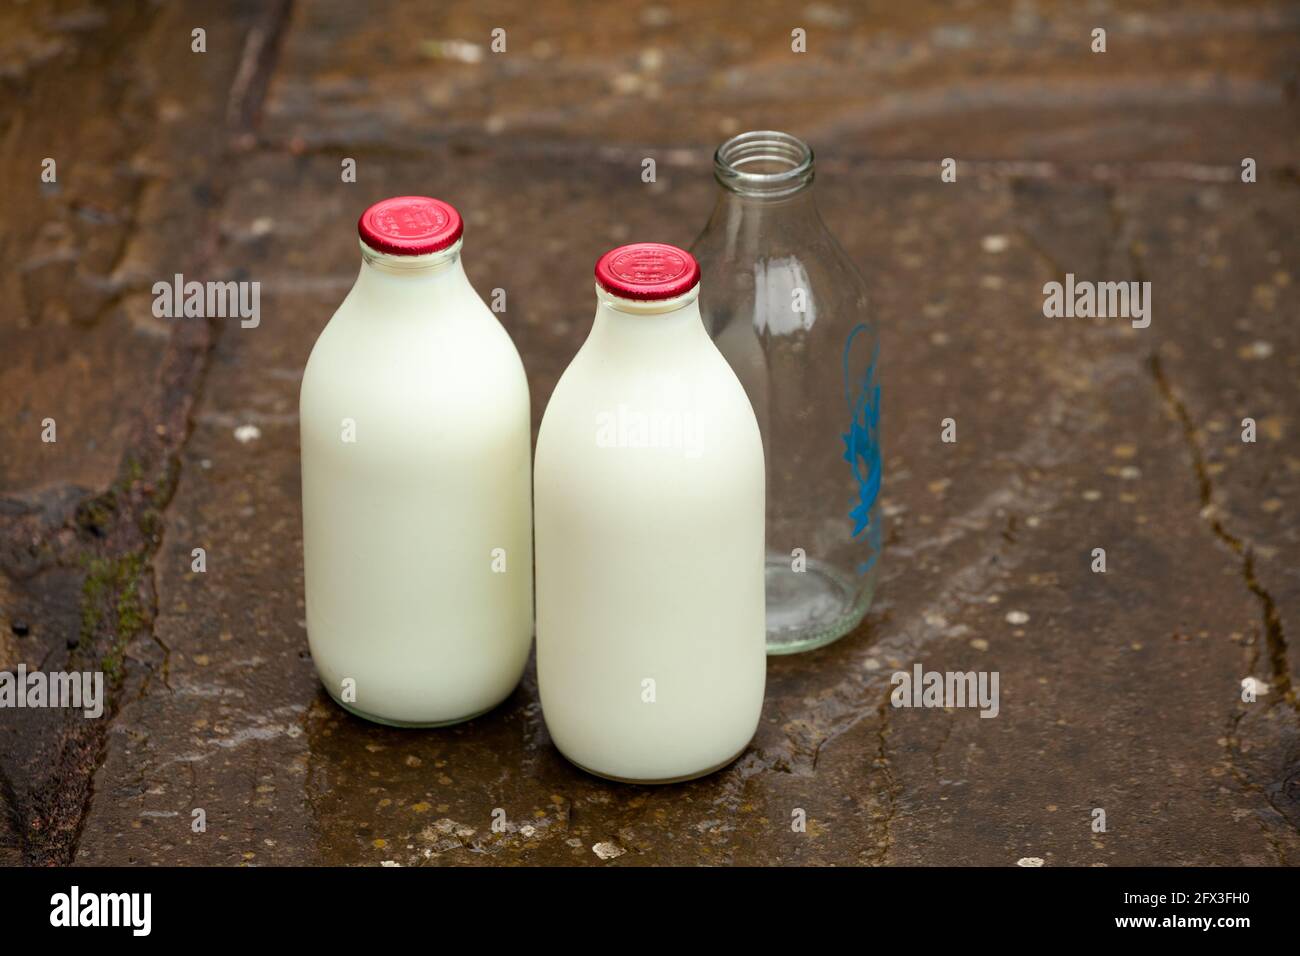 Deux bouteilles pleines de lait écrémé et une bouteille vide Banque D'Images